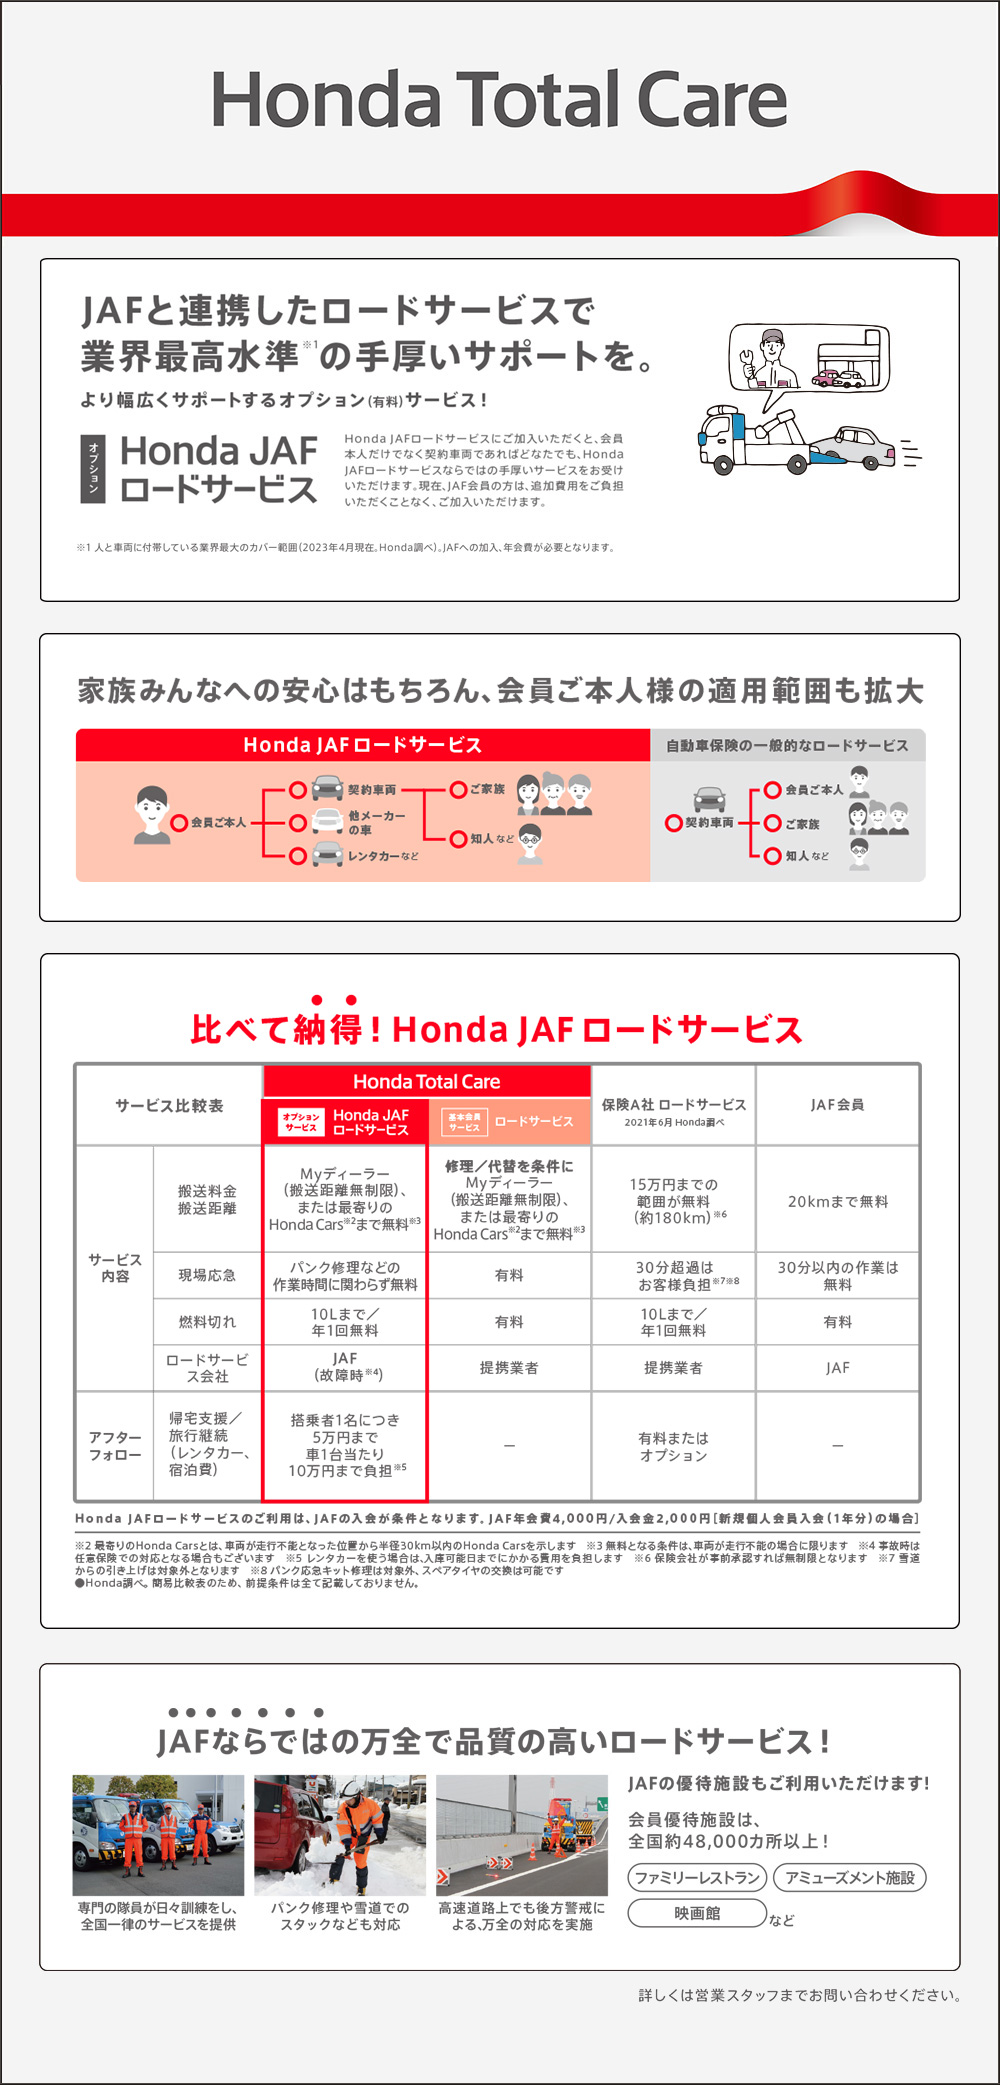 Honda JAF ロードサービス